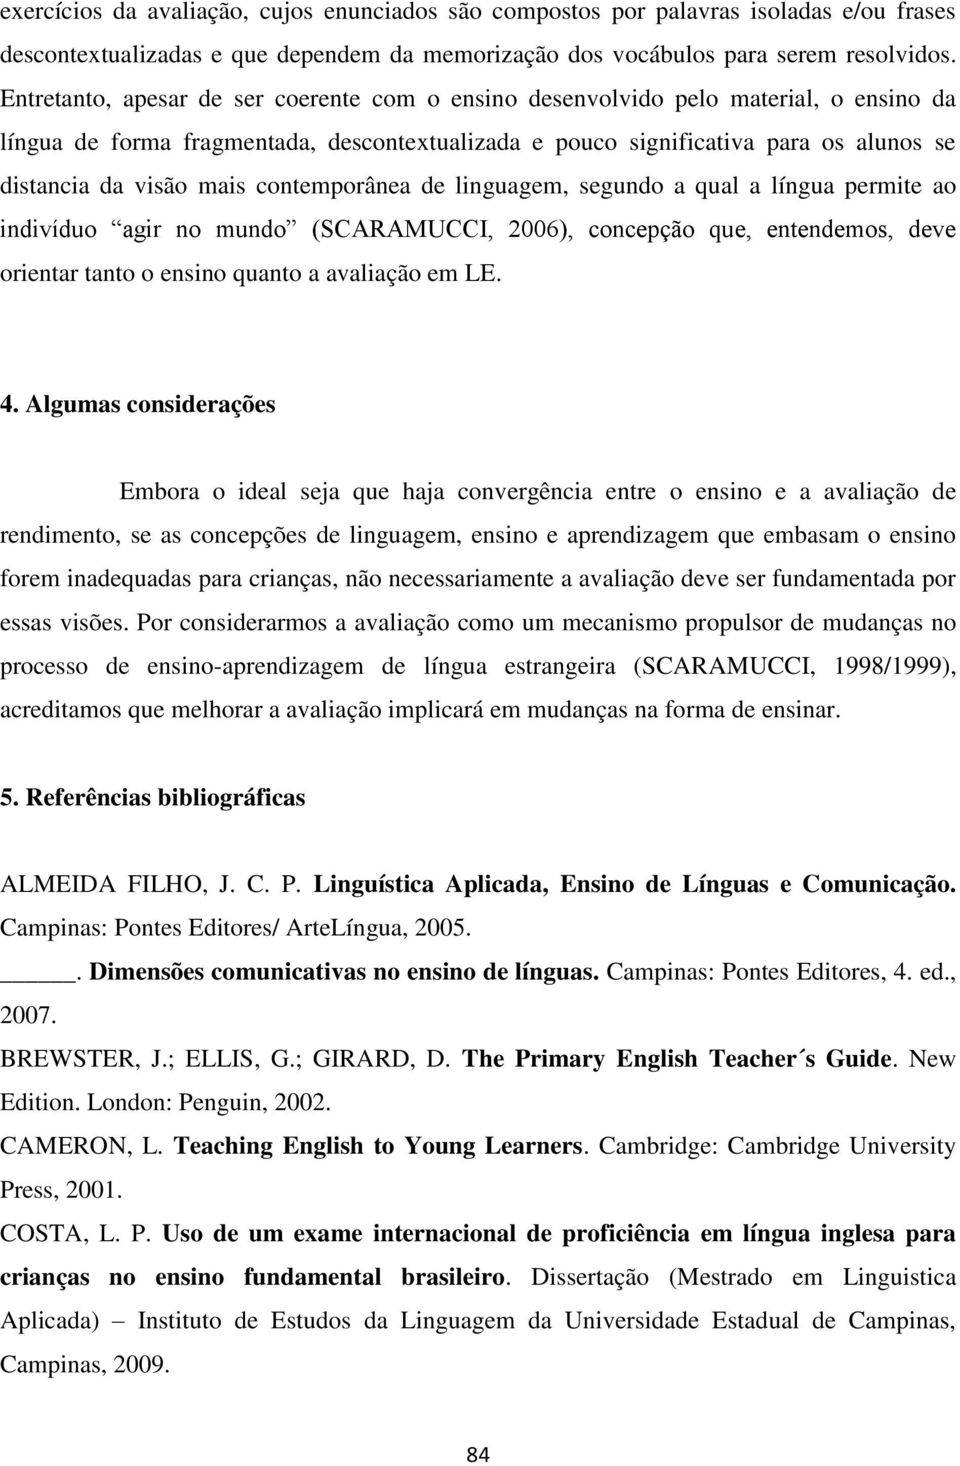 contemporânea de linguagem, segundo a qual a língua permite ao indivíduo agir no mundo (SCARAMUCCI, 2006), concepção que, entendemos, deve orientar tanto o ensino quanto a avaliação em LE. 4.